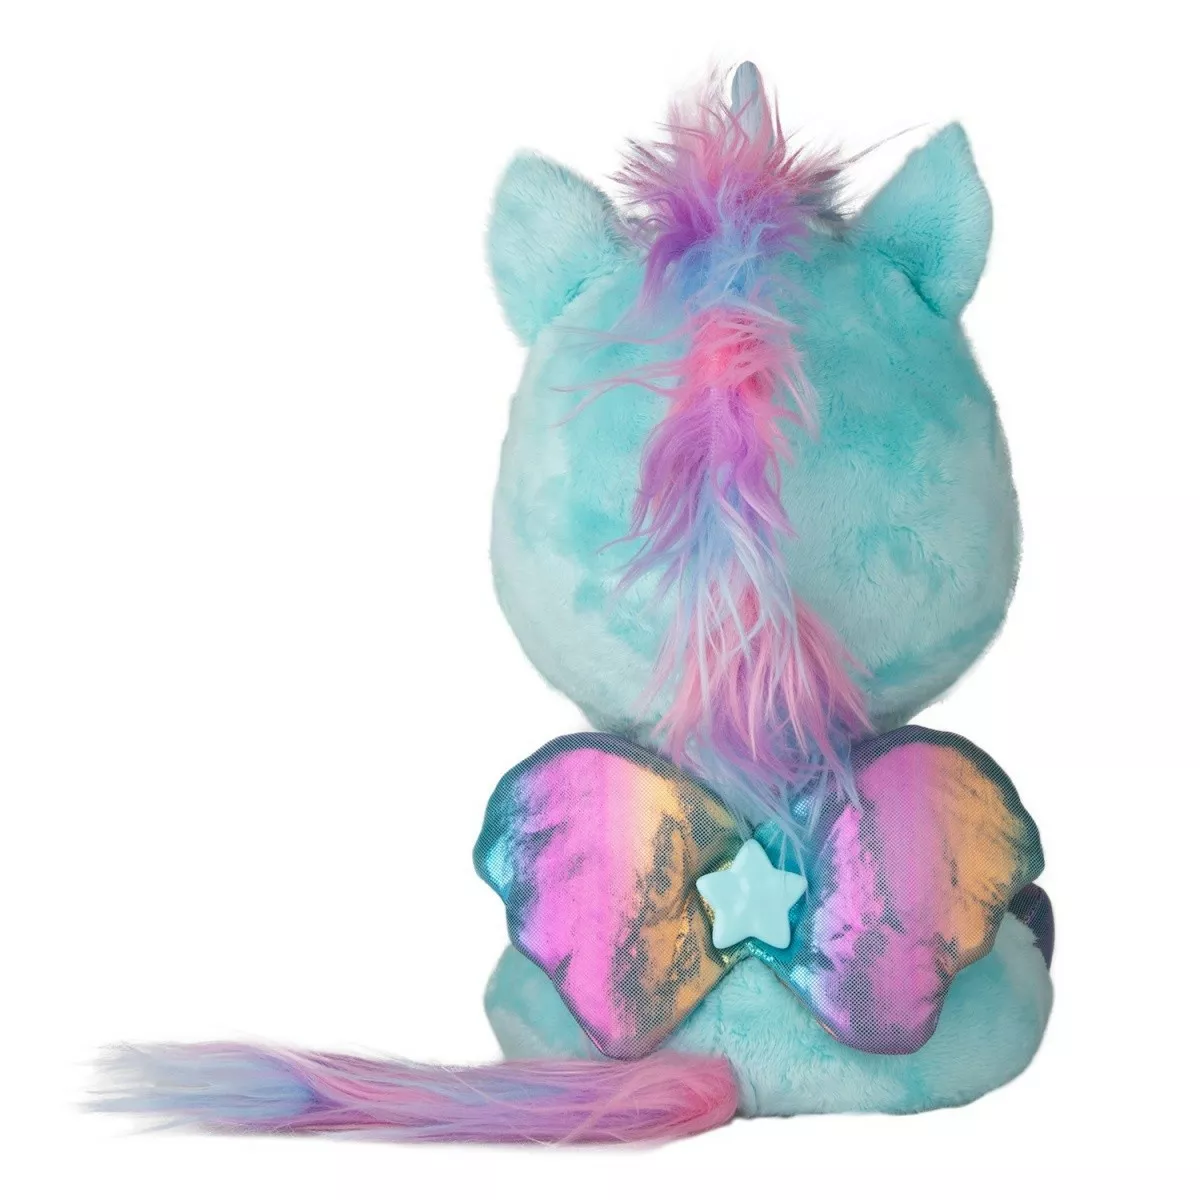 Tm Toys Maskotka interaktywna My Baby Unicorn Niebieski